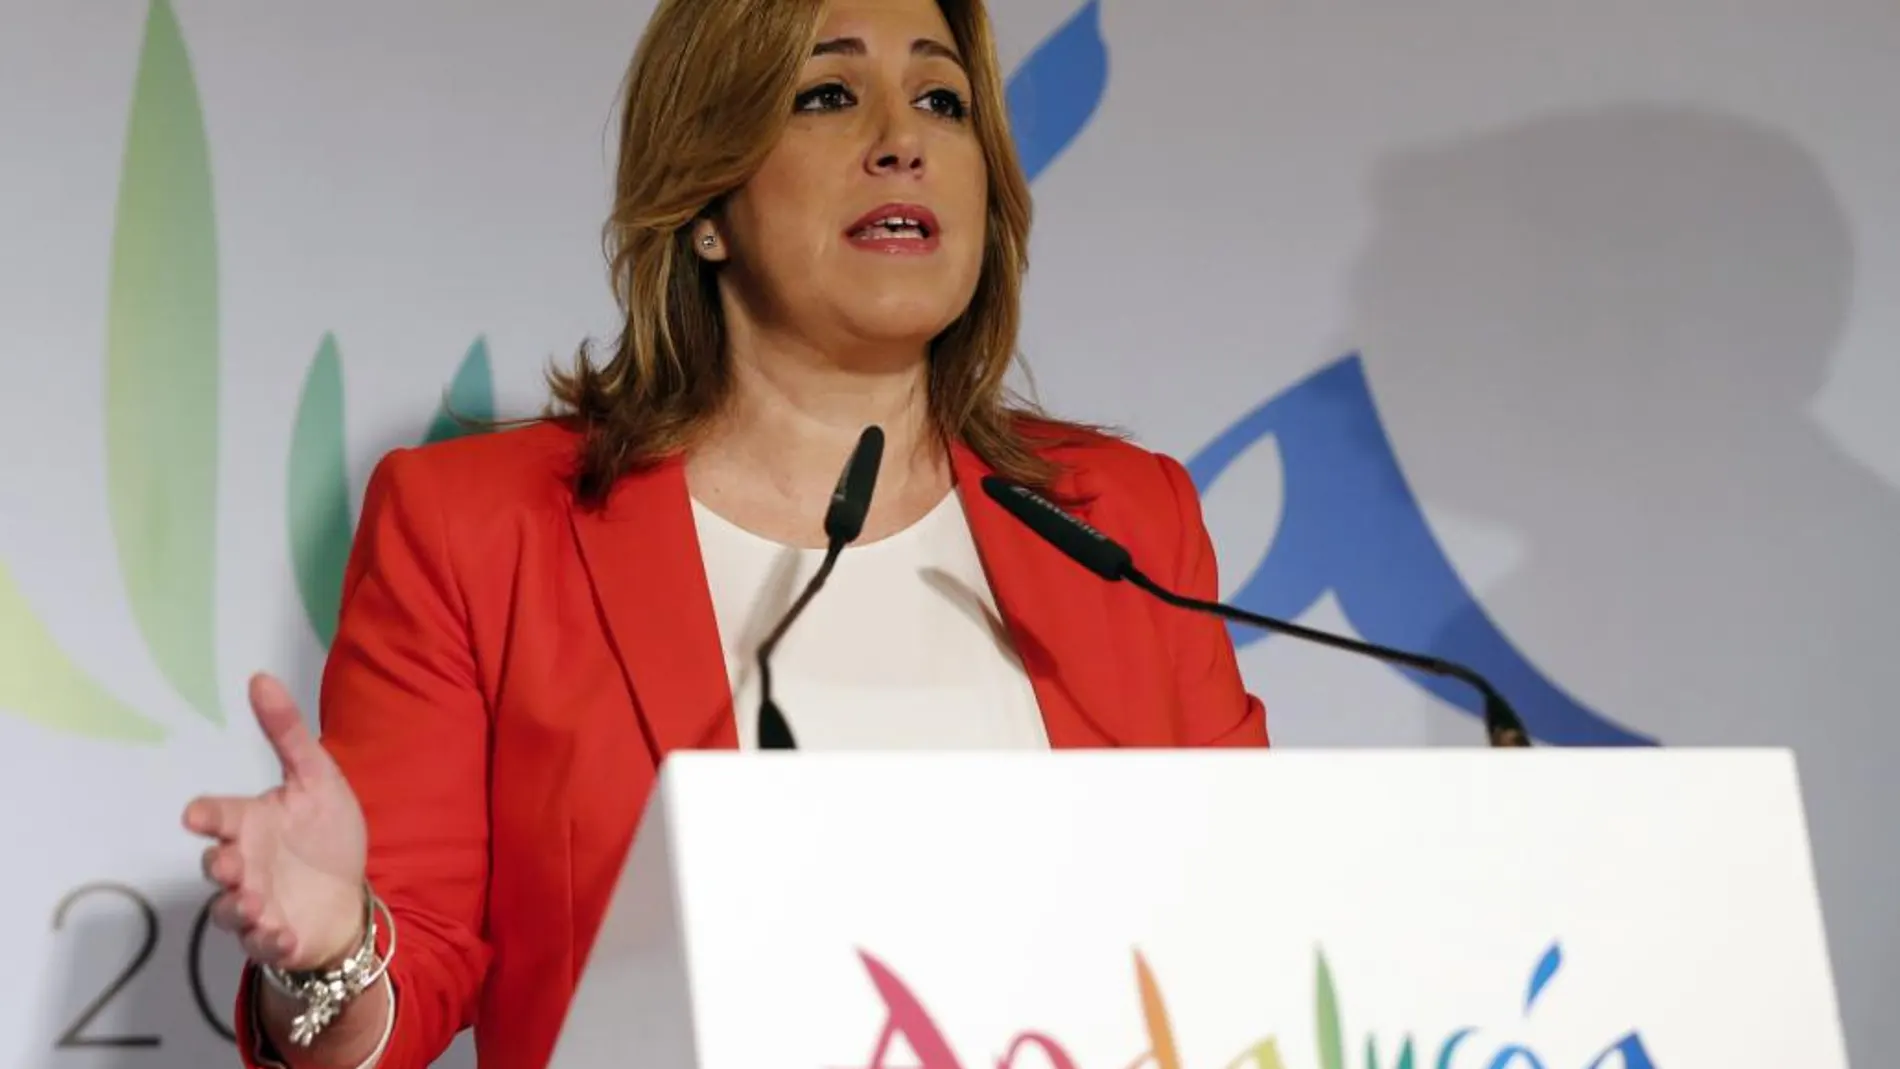 La presidenta de Andalucía, Susana Díaz, durante su intervención en la 36 edición de la feria internacional de turismo Fitur 2016.